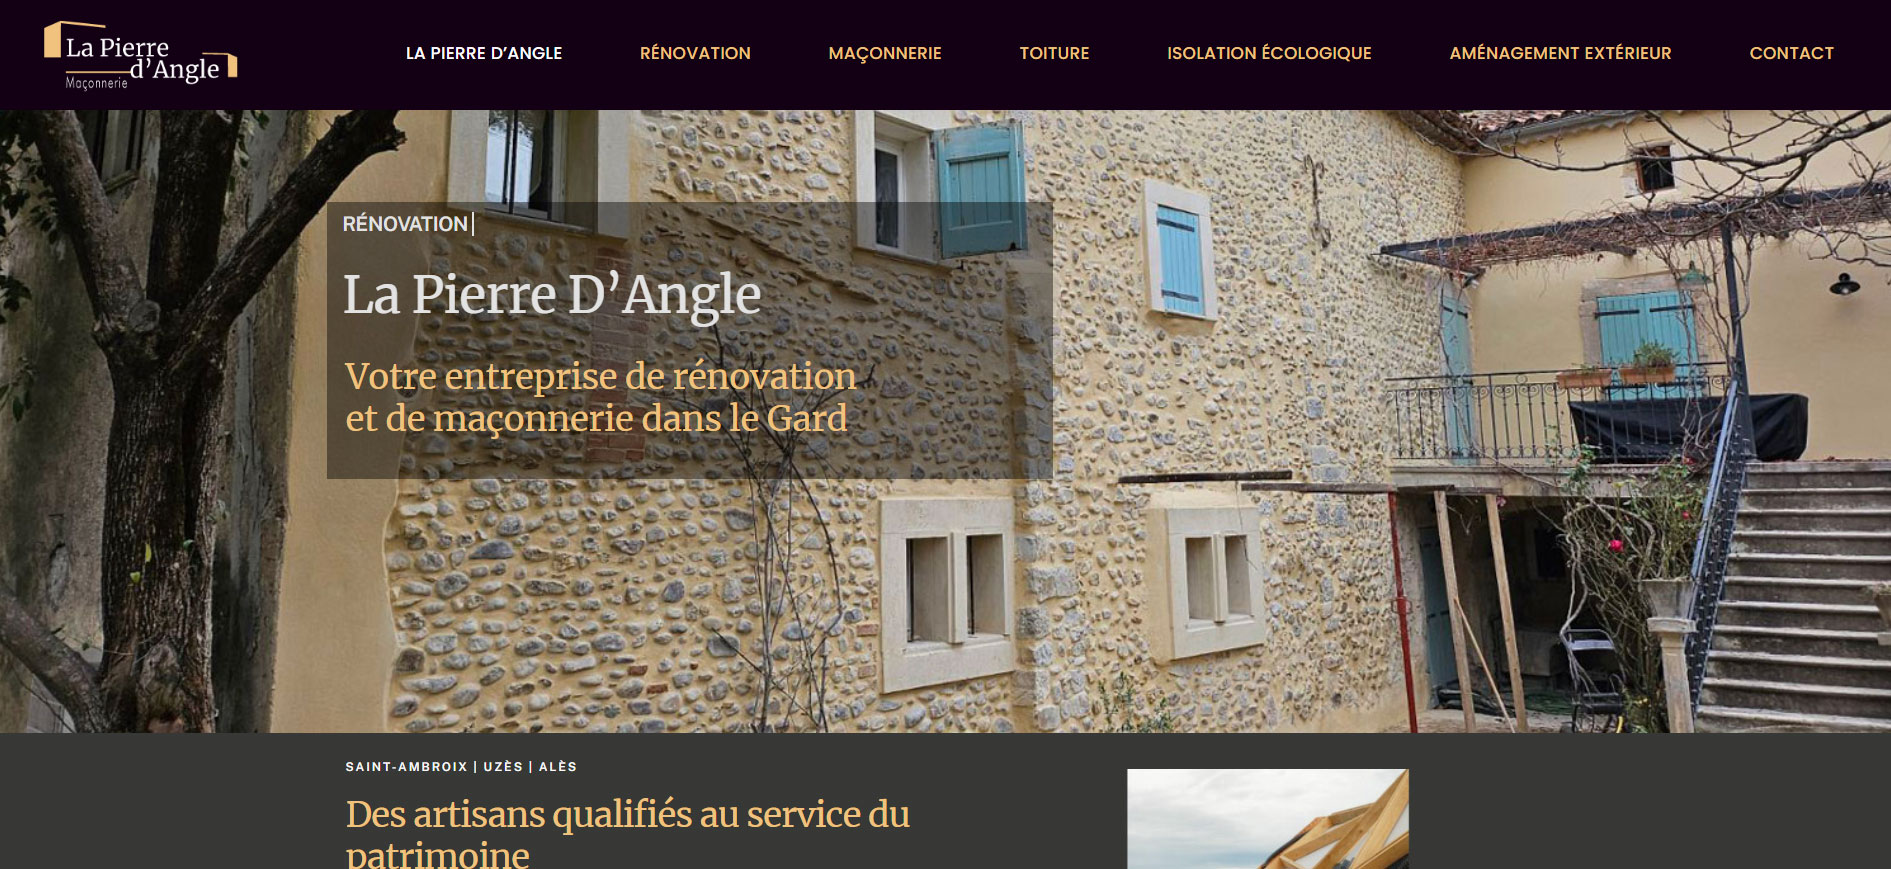 La Pierre d'Angle : un site web vitrine qui présente les services de l'entreprise de rénovation et de maçonnerie.